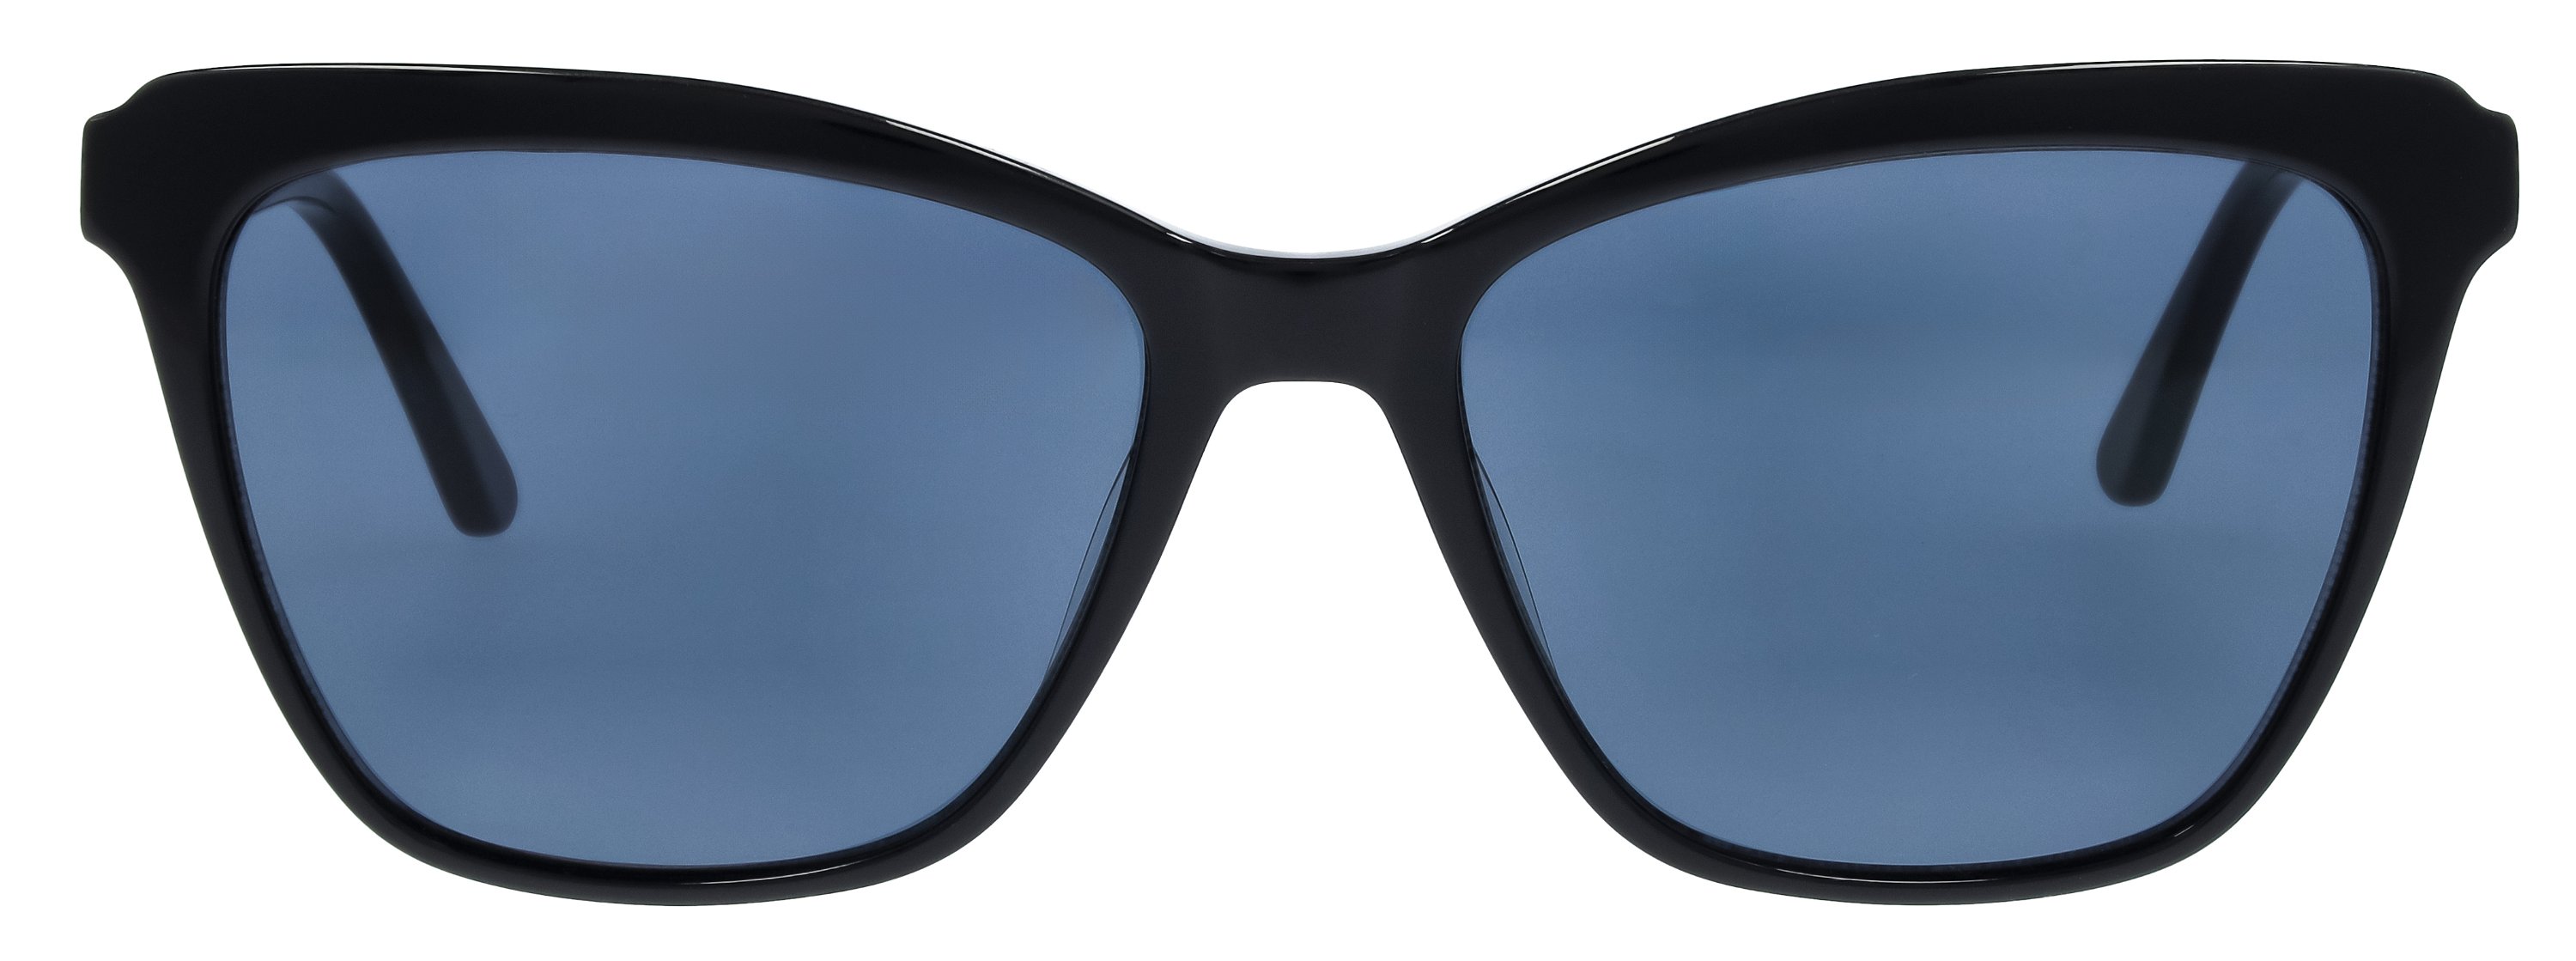 Das Bild zeigt die Sonnenbrille 149002 von der Marke Abele Optik in schwarz.